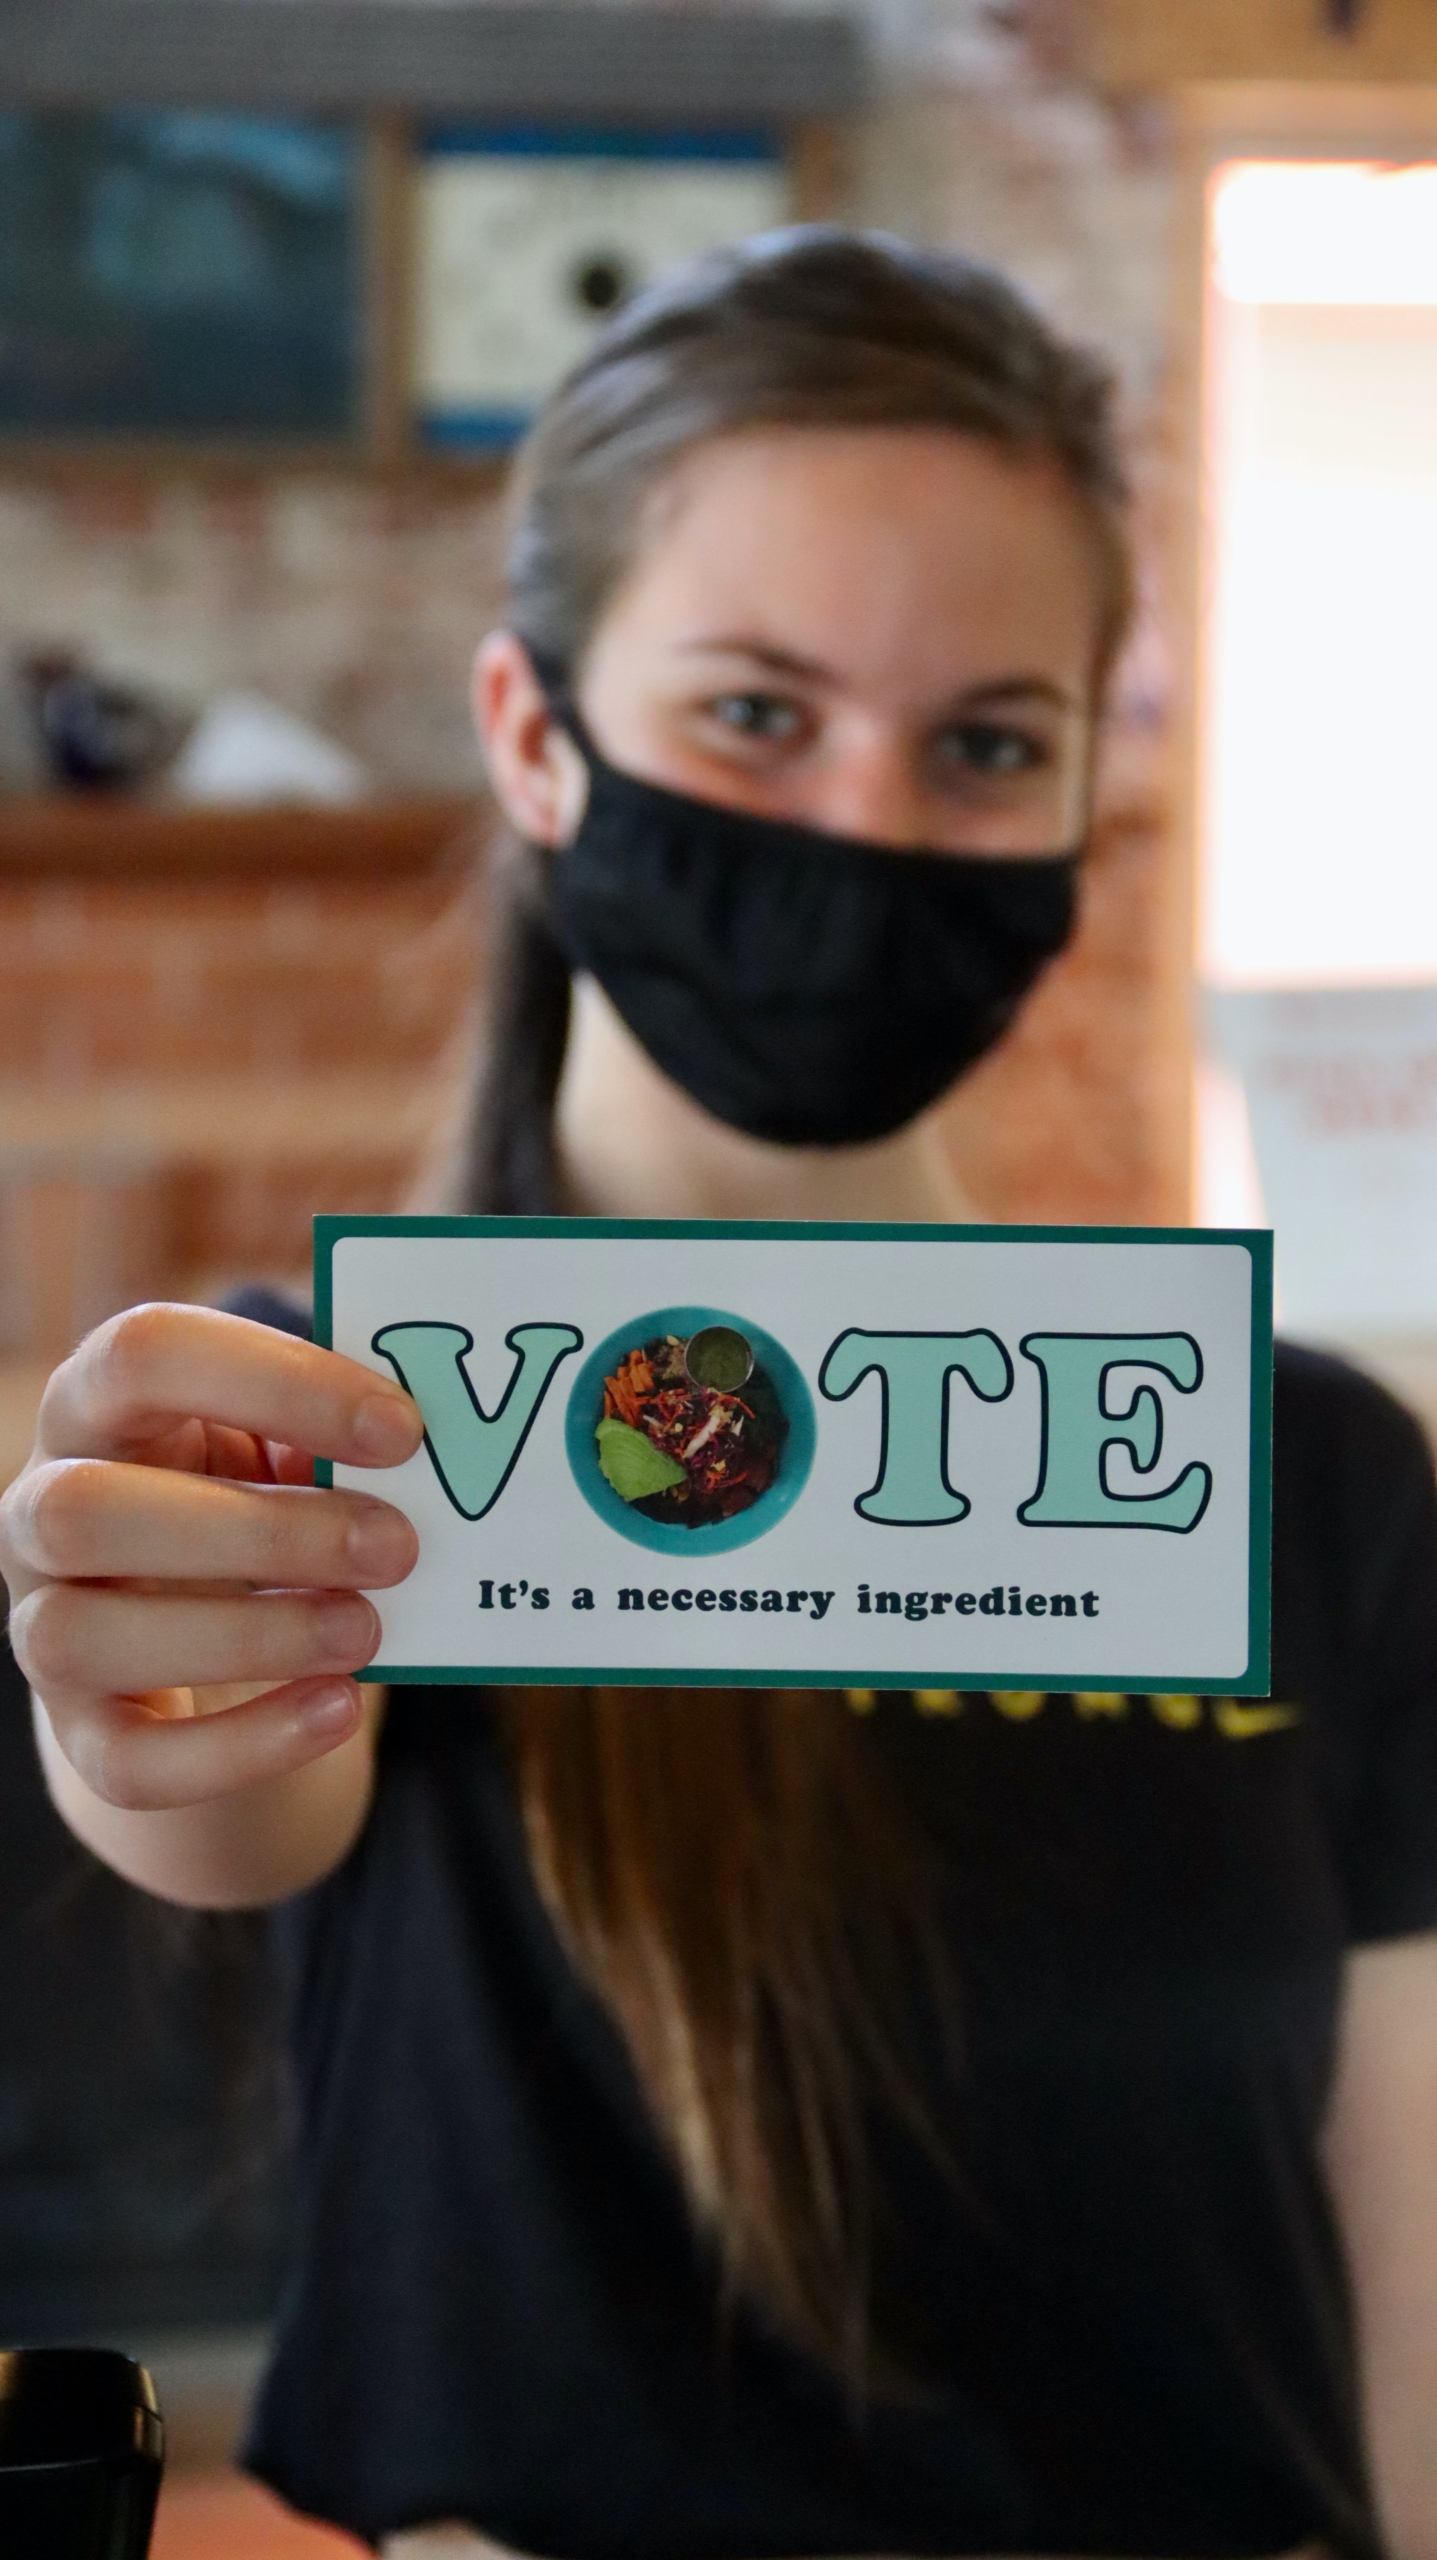 VOTEと書かれたカードを前に差し出して見せるように持っている女性。